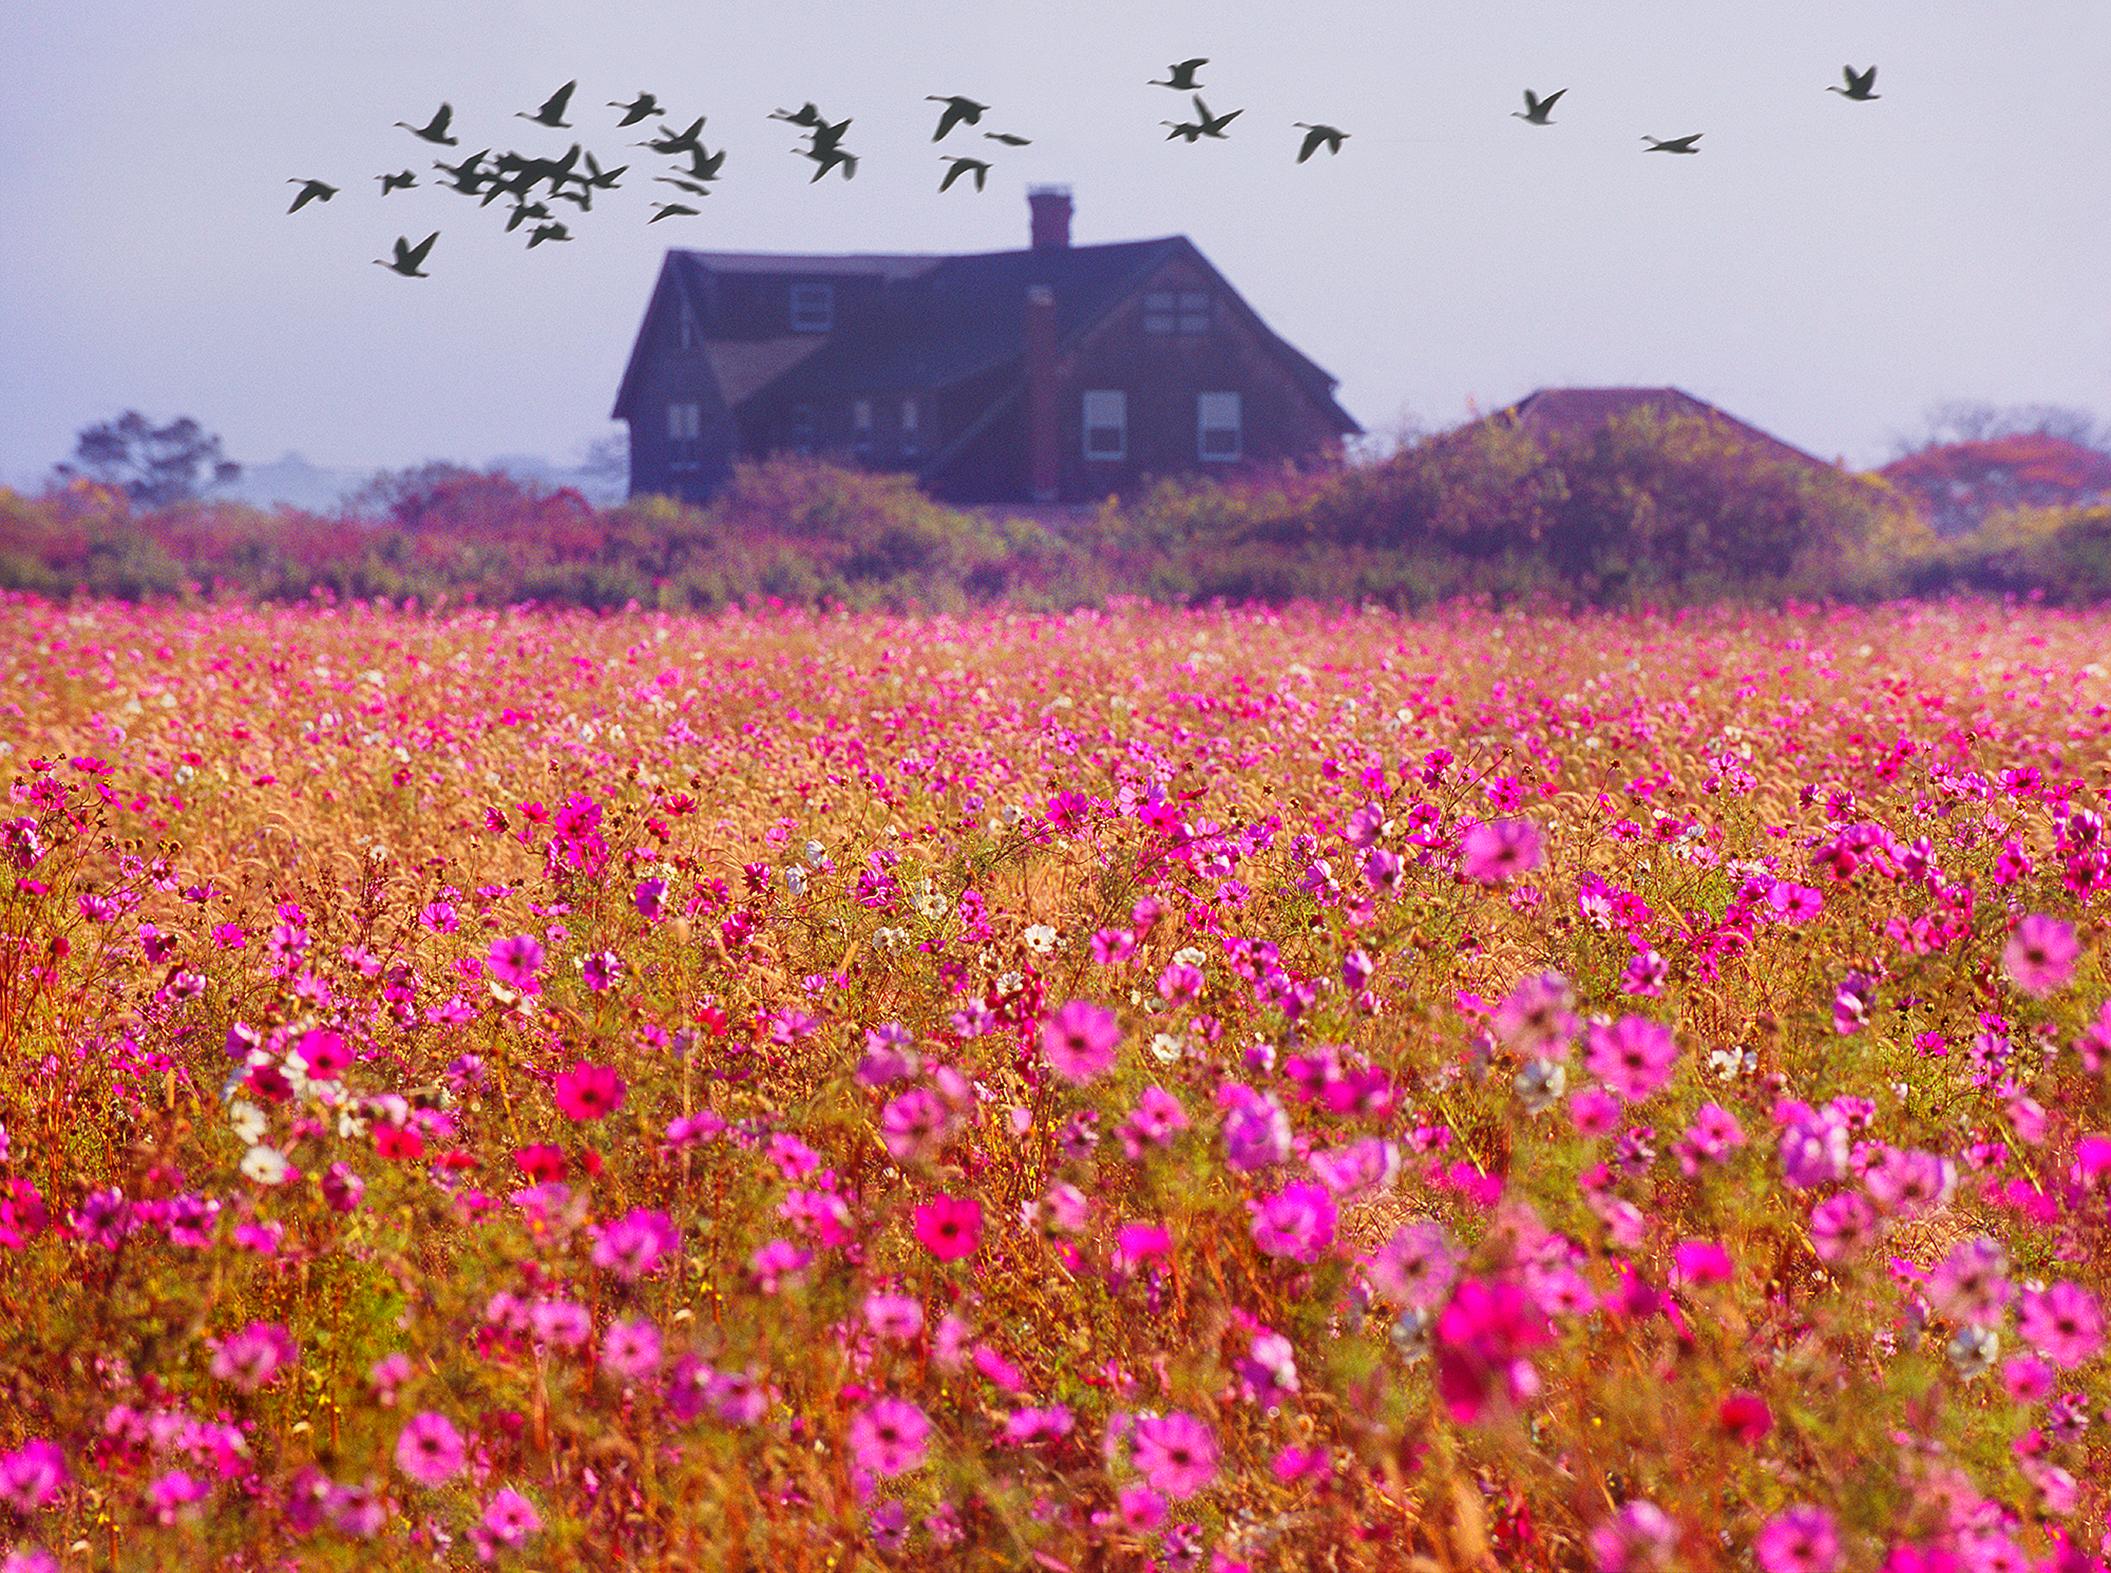 Paysage de l'East Hampton avec champ de fleurs roses et oiseaux migrateurs Monet